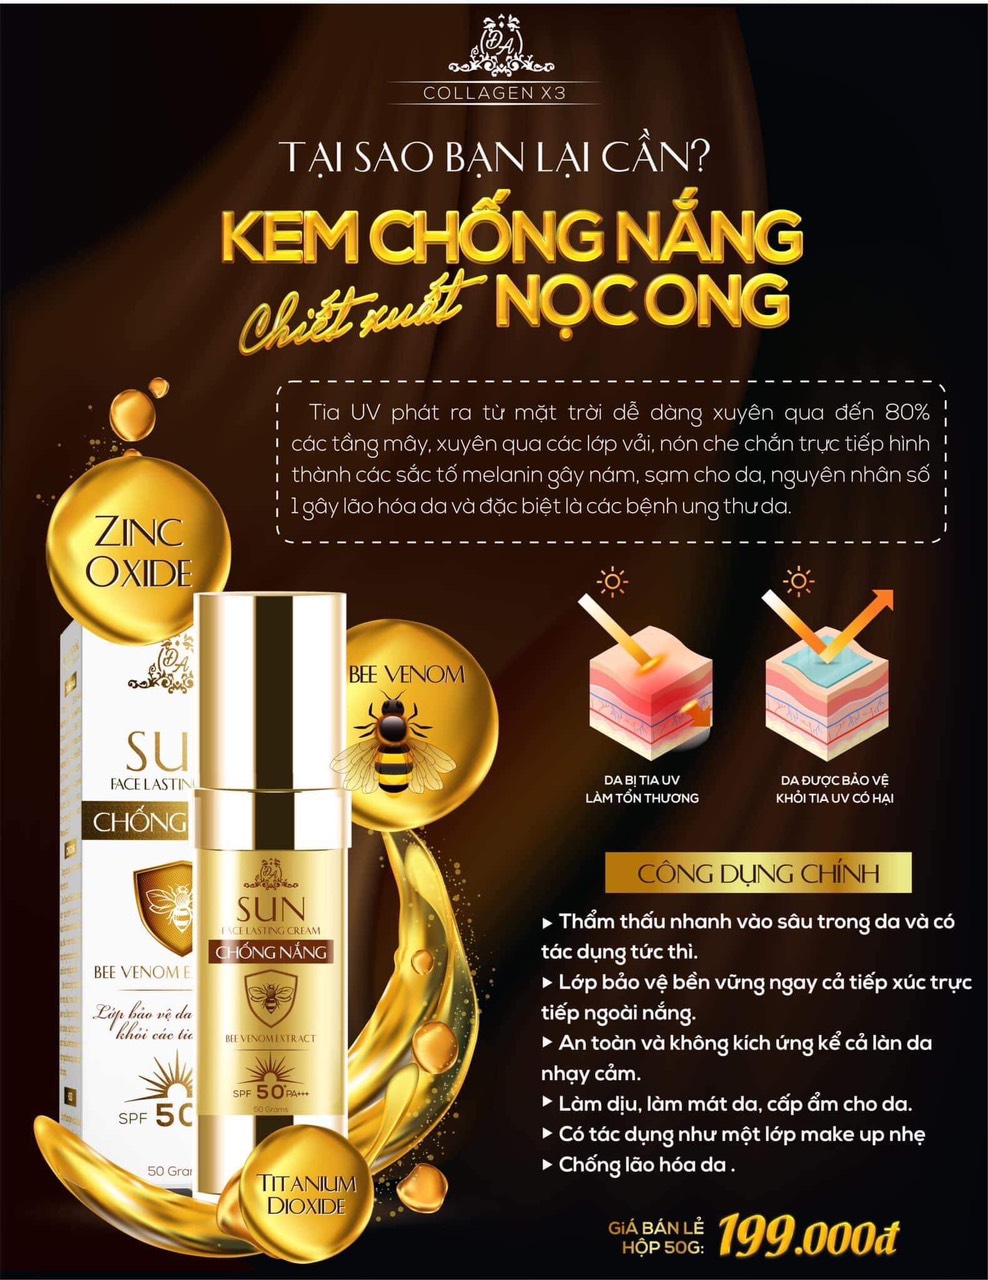 Kem chống nắng nọc ong Collagen X3 Mỹ phẩm Đông Anh - KCNX3